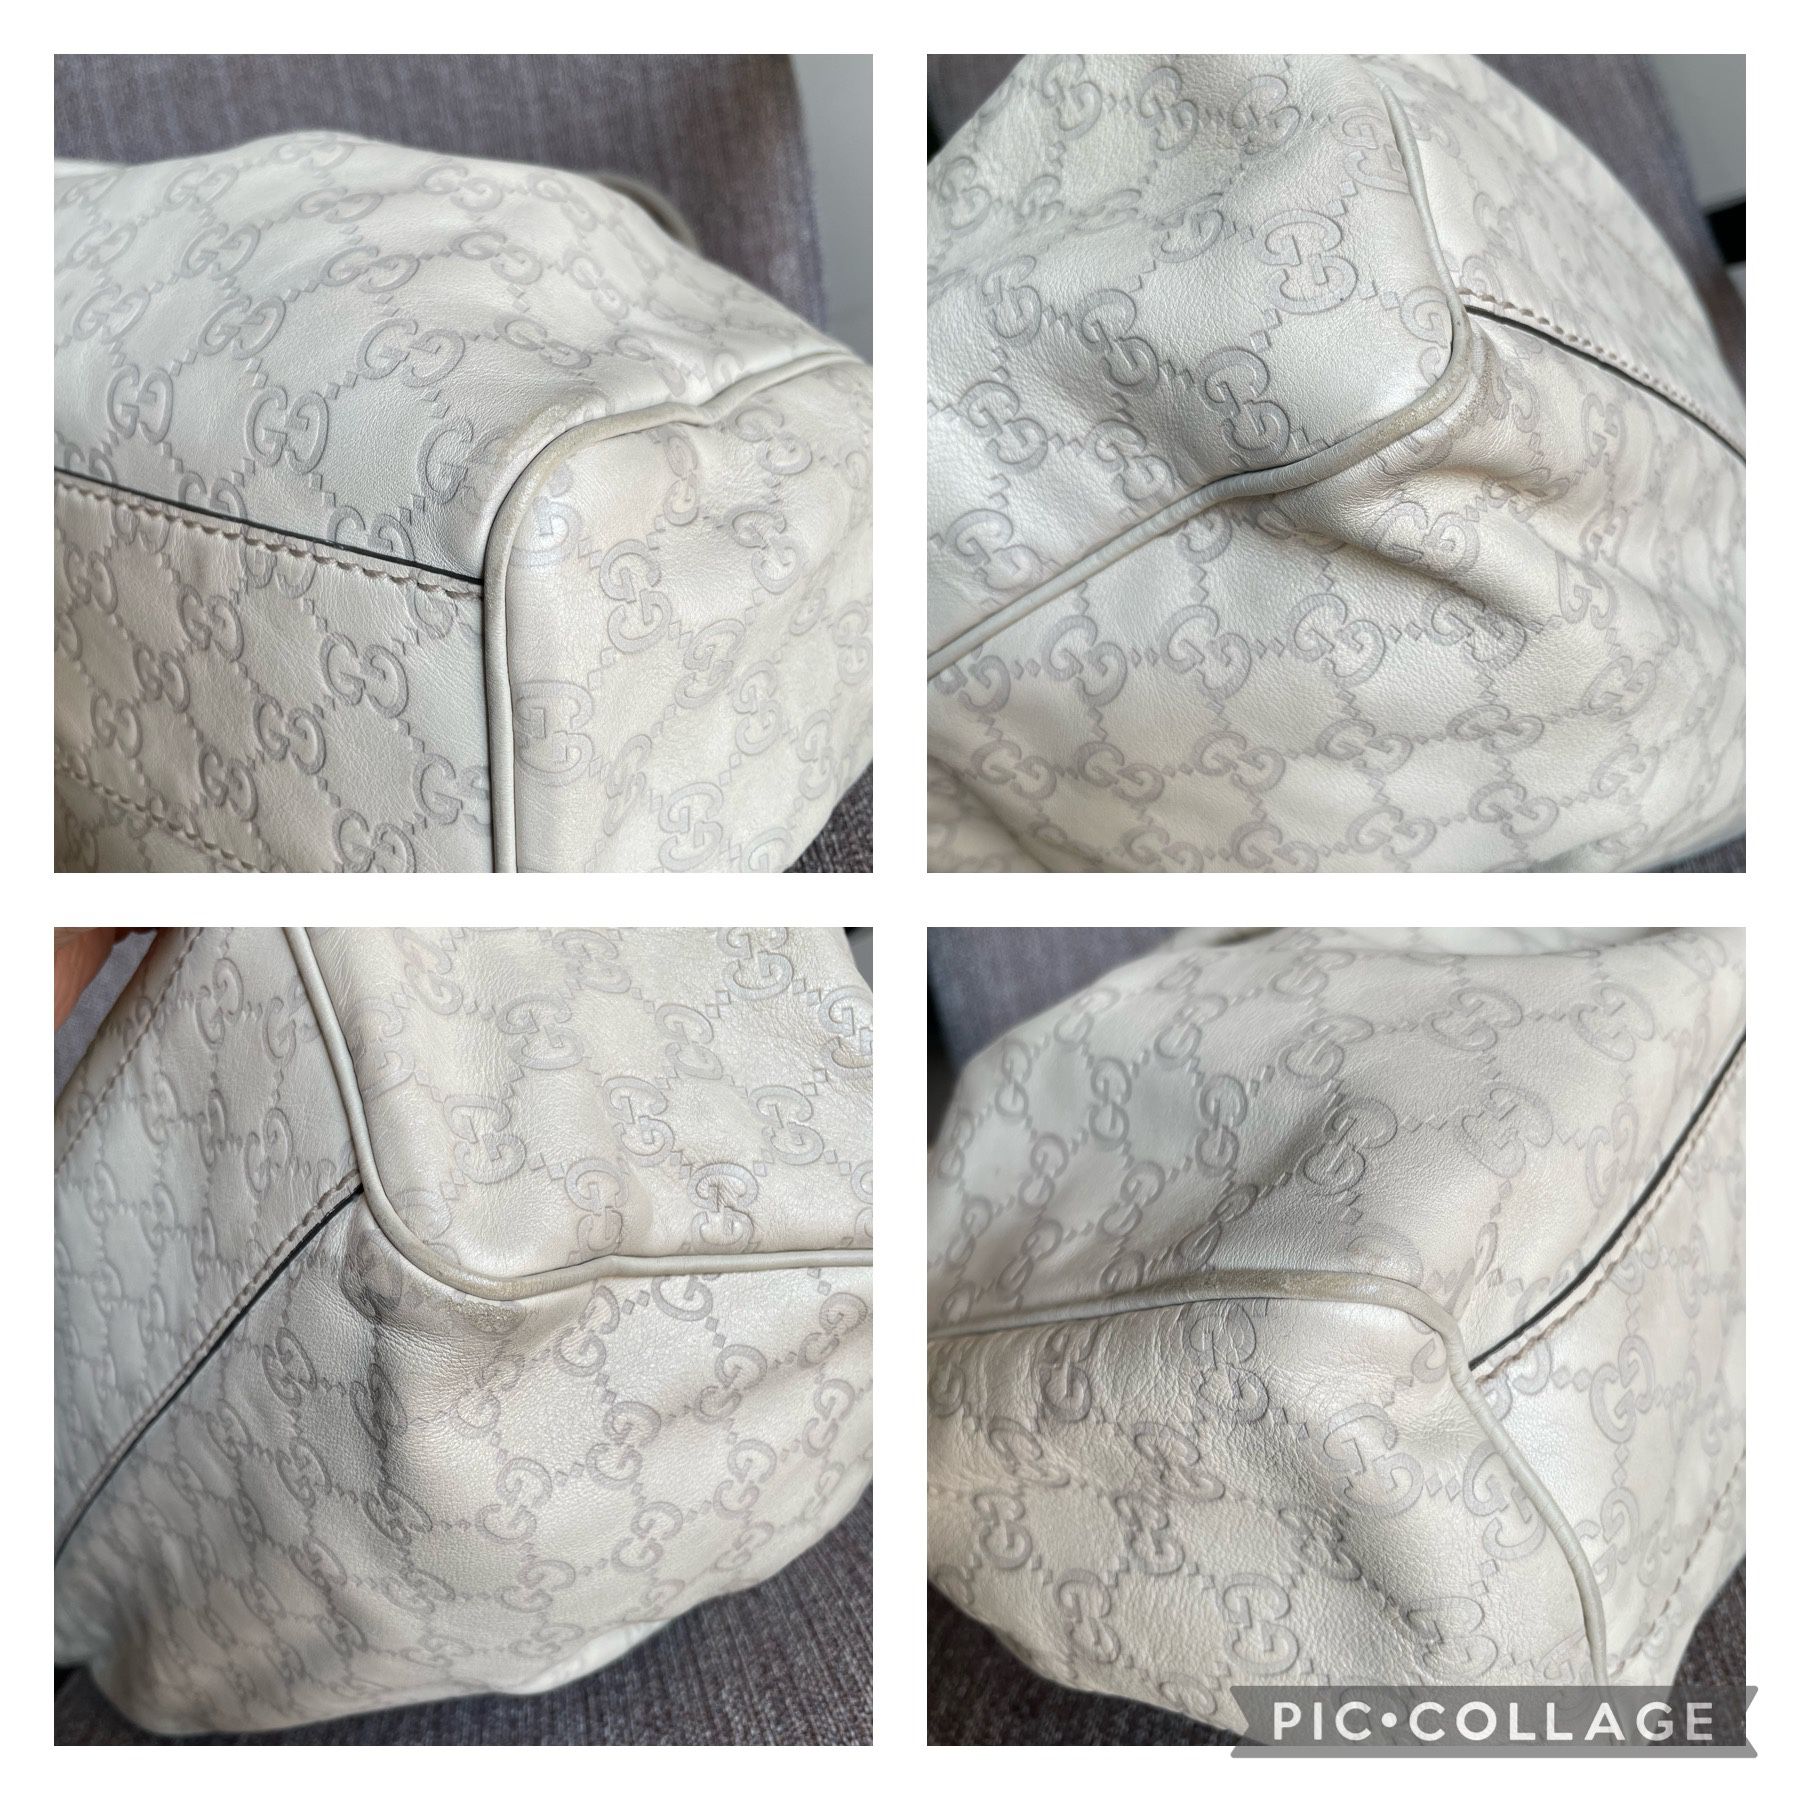 Authentic Gucci Guccissima Hobo Bag for Sale in Marietta, GA - OfferUp